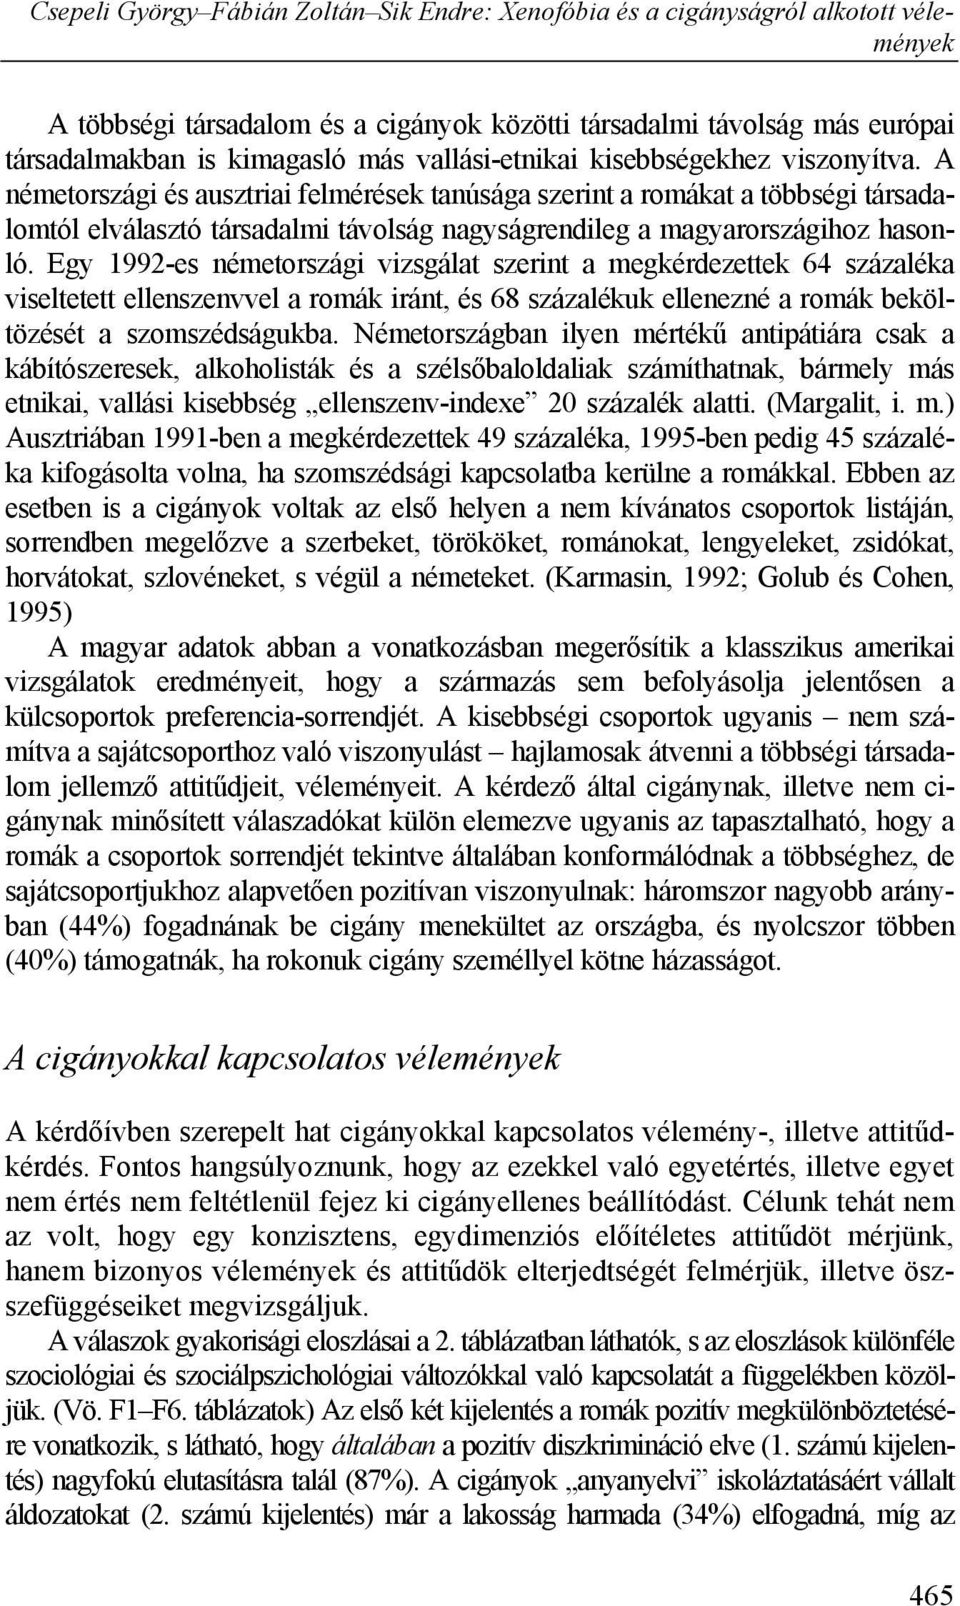 Csepeli György Fábián Zoltán Sik Endre: Xenofóbia és a cigányságról  alkotott vélemények - PDF Ingyenes letöltés